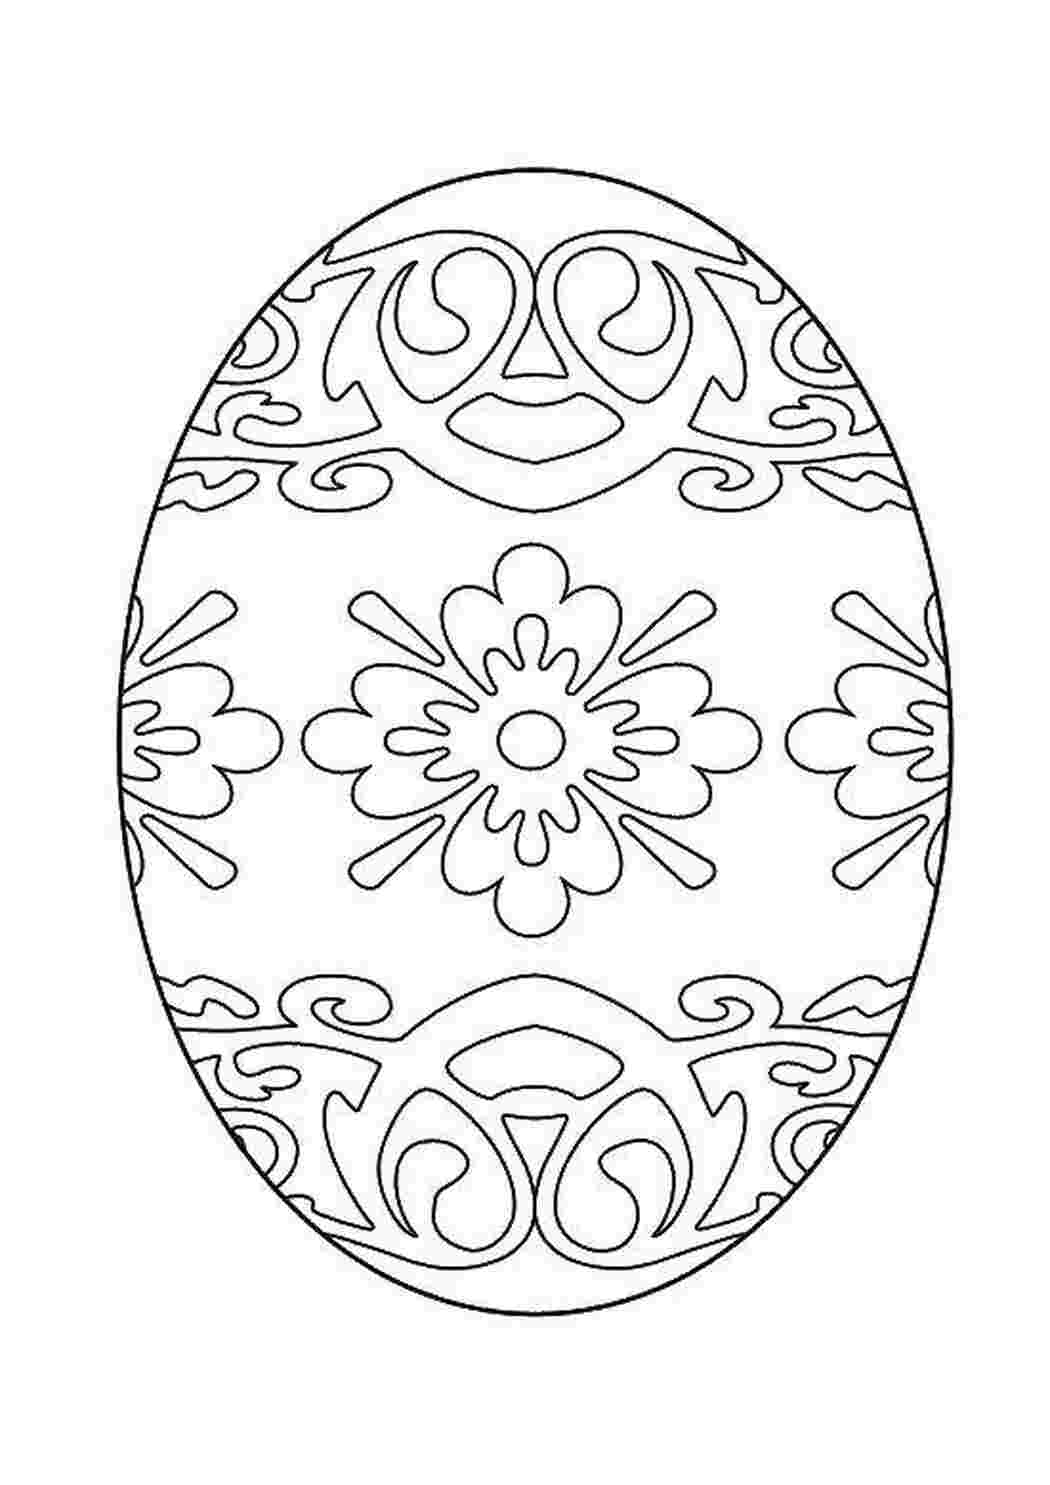 Раскраски Раскрашенное яйцо Узоры для раскрашивания яиц яйцо, узоры